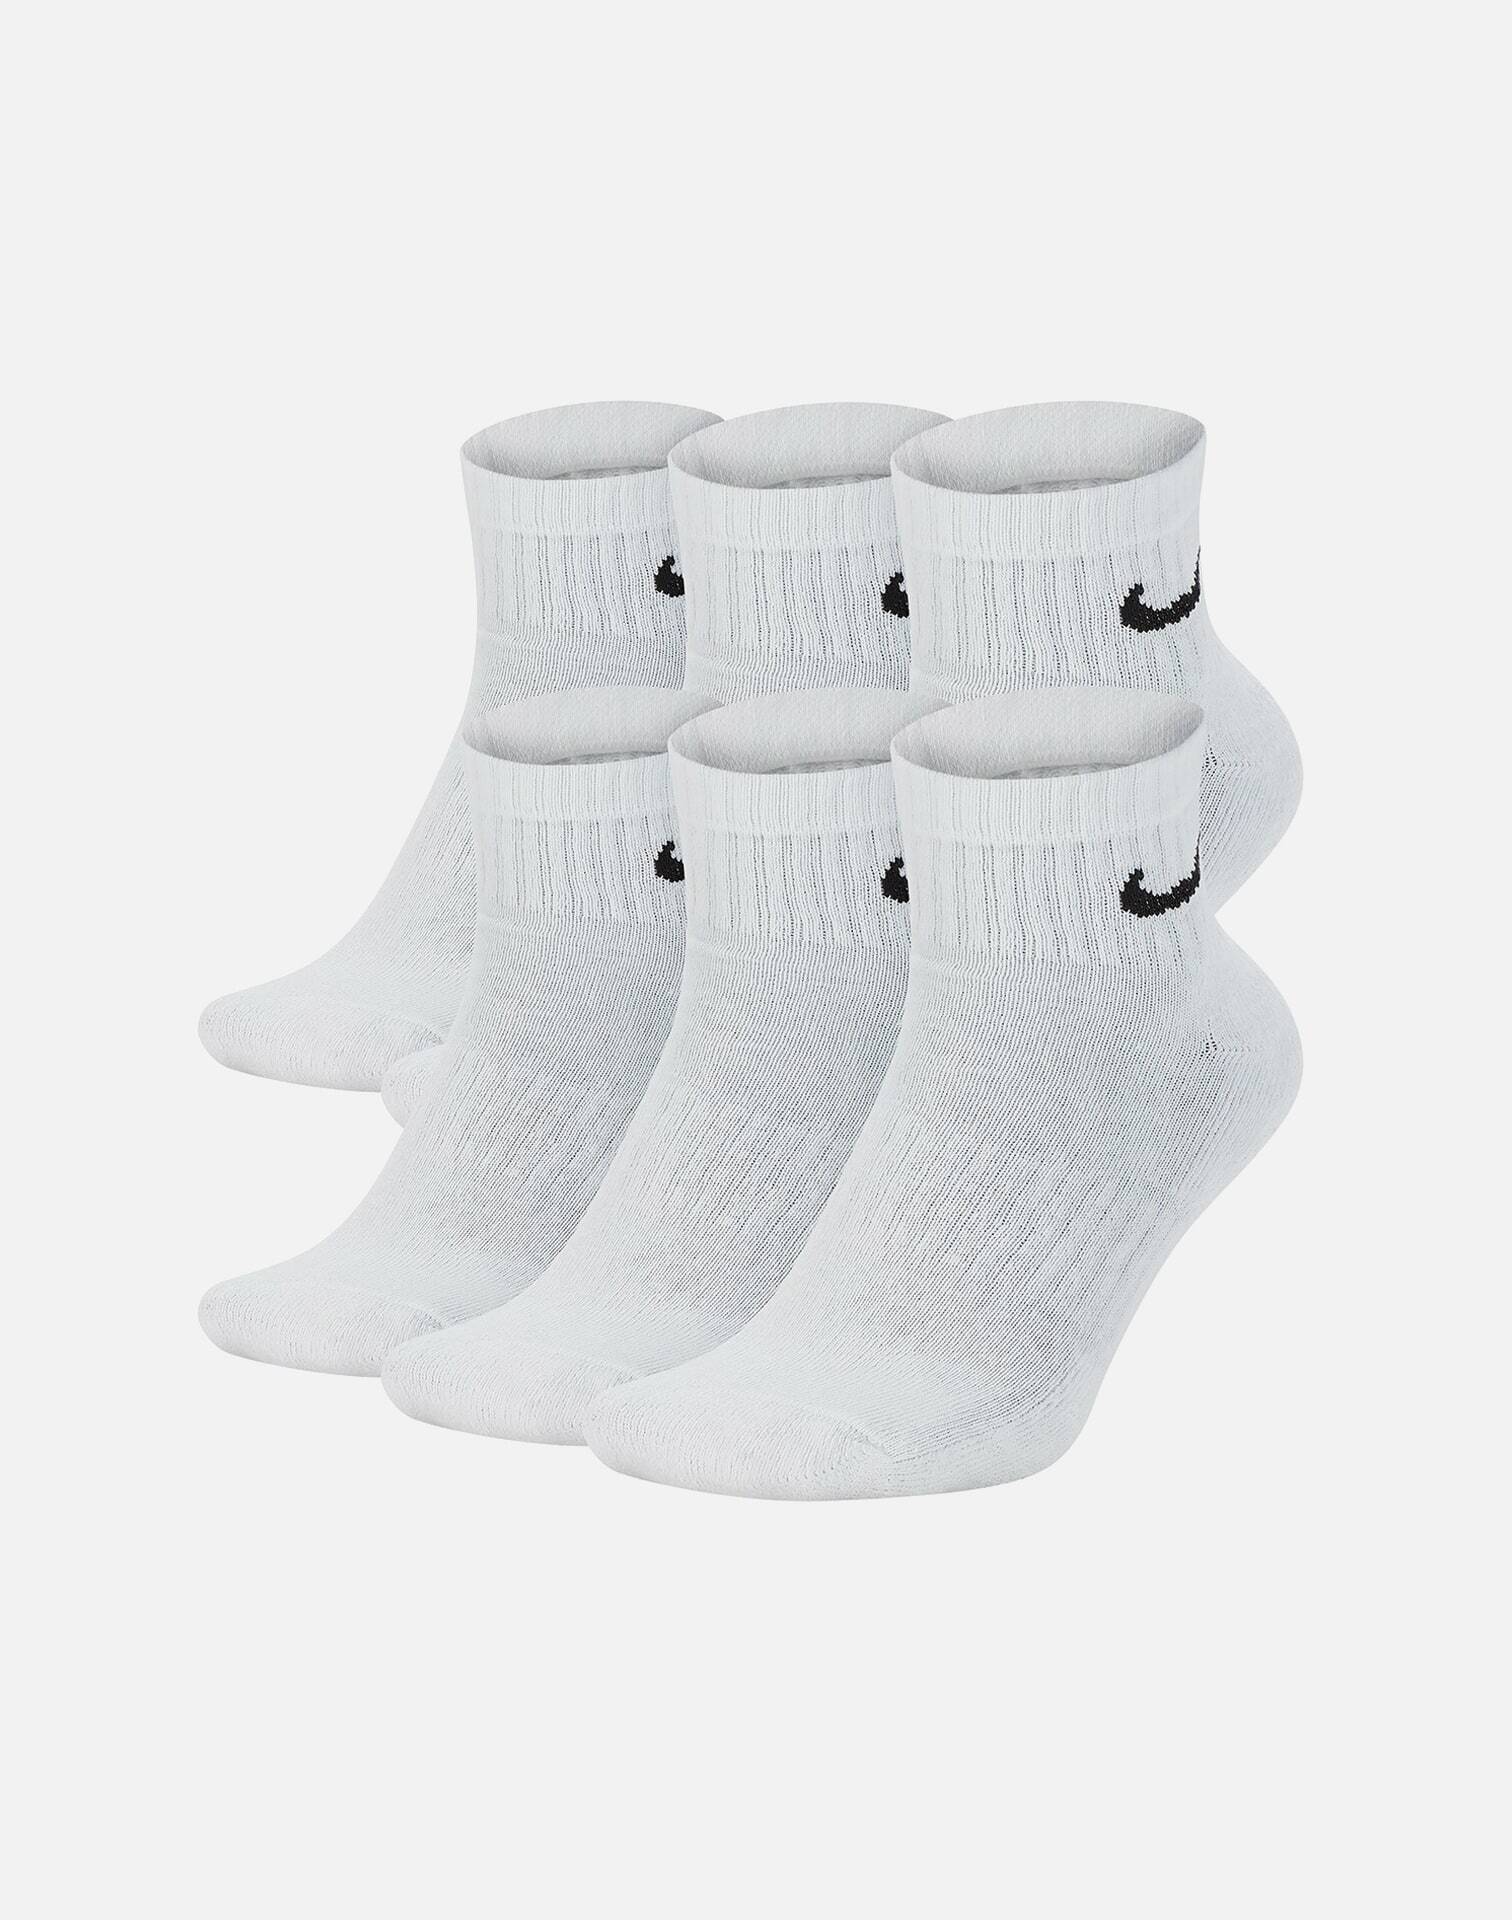 clearance nike socks